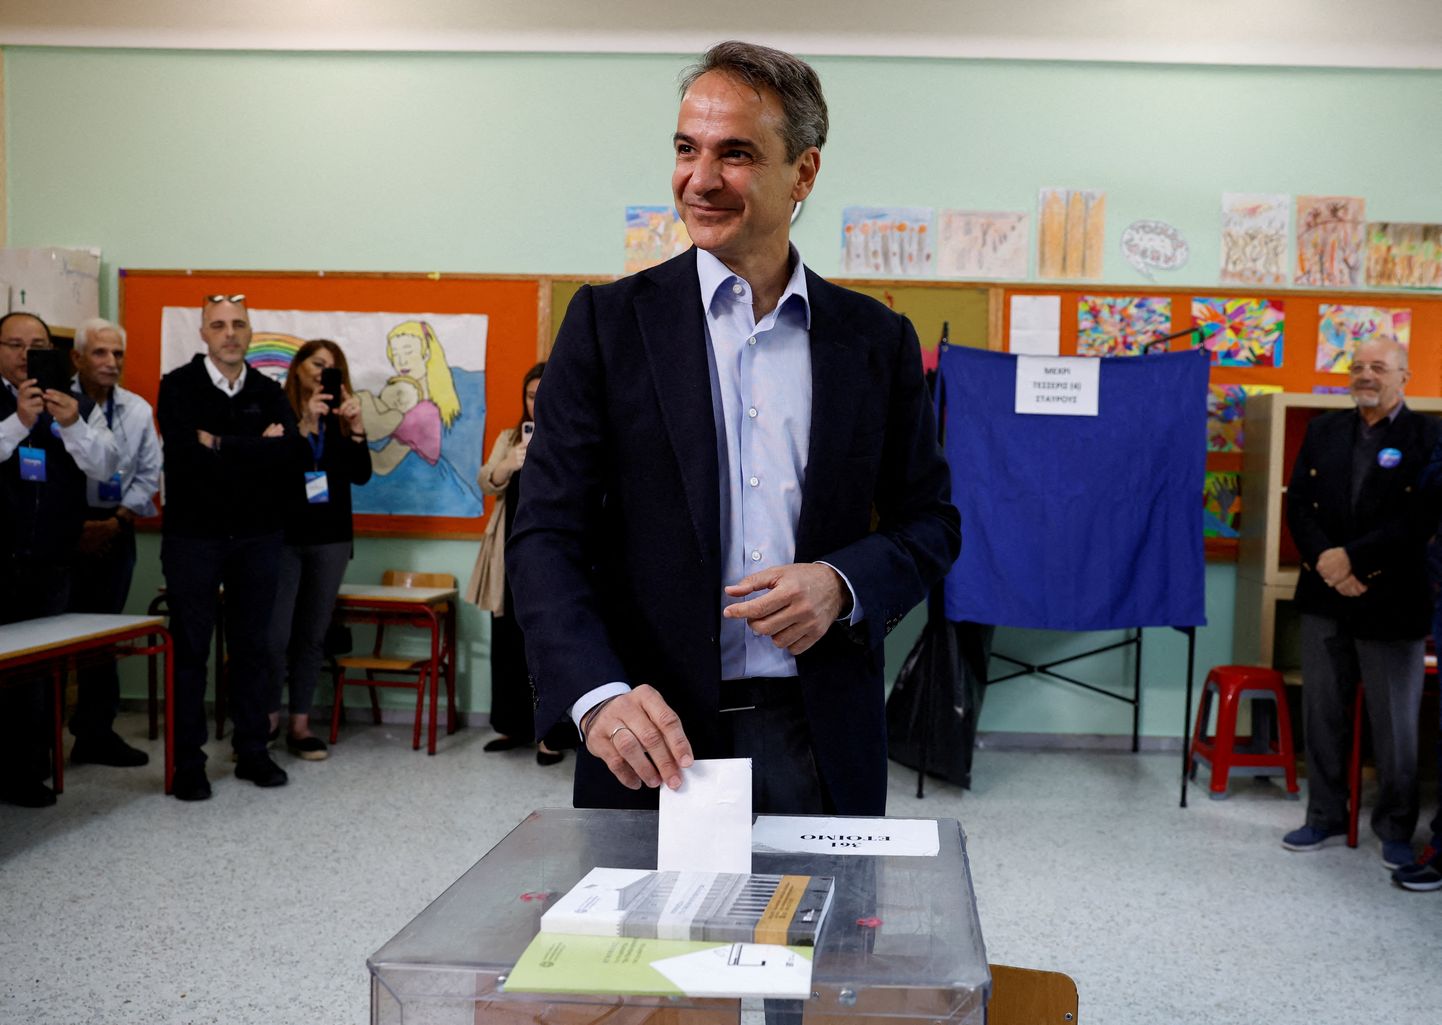 Grieķijas premjers Kirjaka Micotakis nodod savu balsi parlamenta vēlēšanās